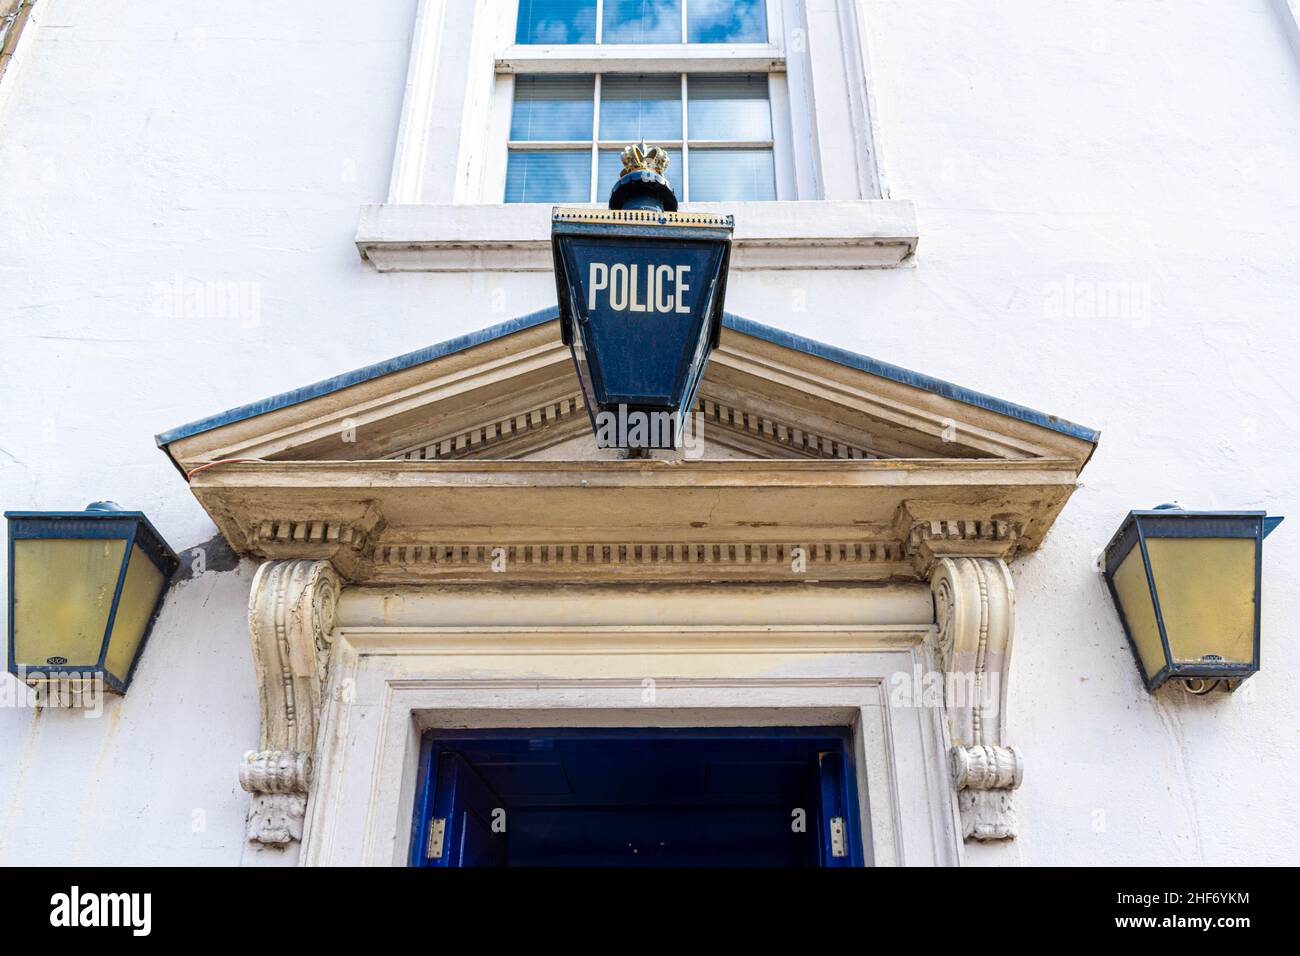 Primo piano della stazione di polizia nel centro di Durham, Inghilterra. Cartello sospeso della polizia blu. Concetto di giustizia, protezione della polizia, criminalità, difesa. SP Foto Stock